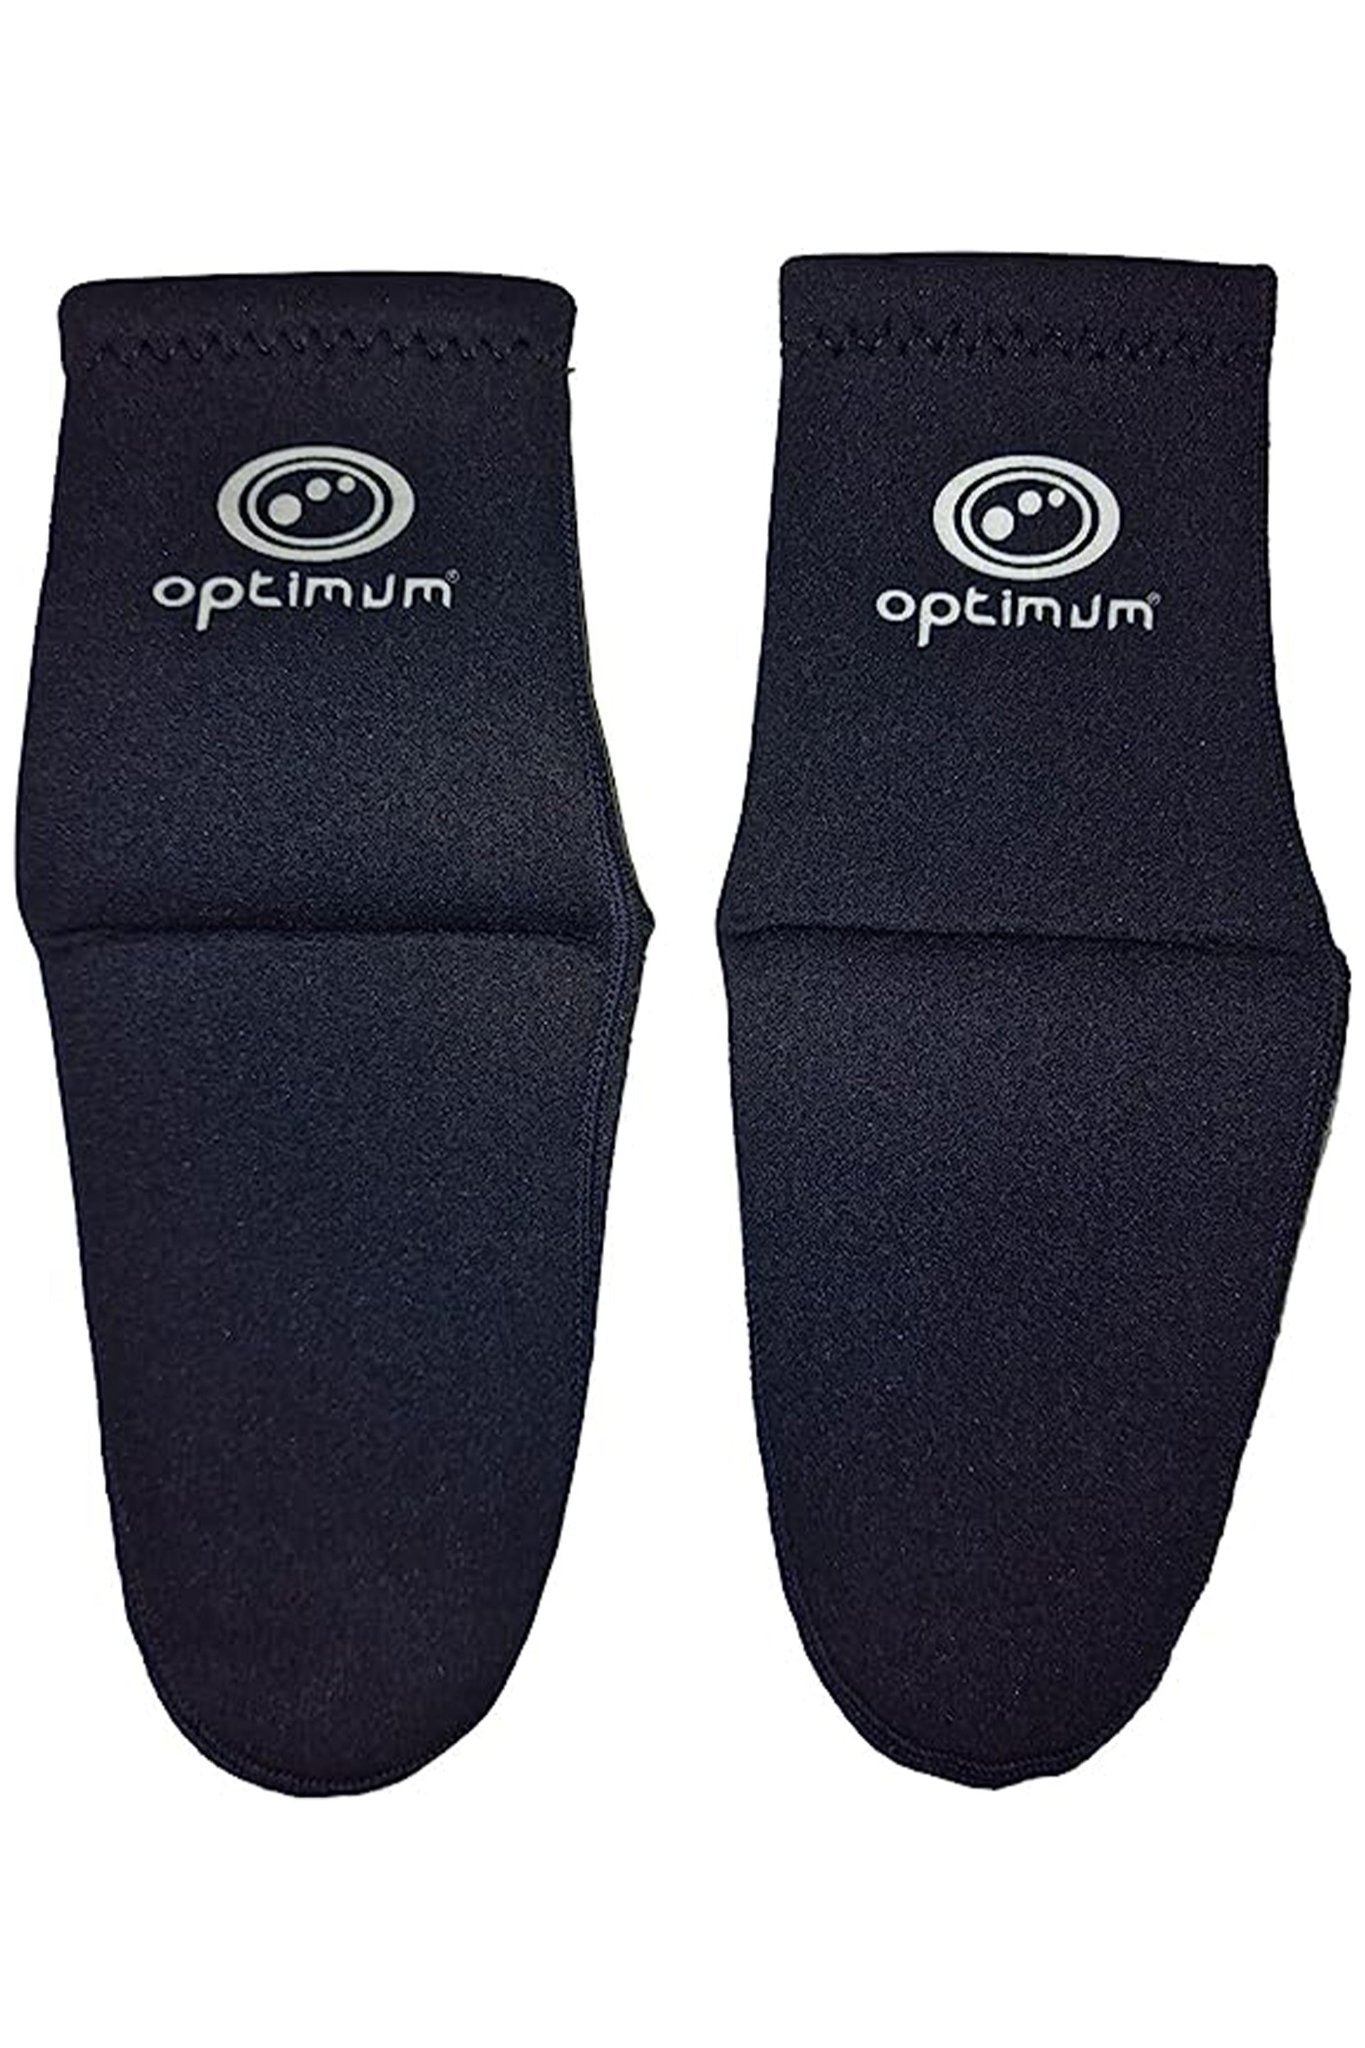 3 Pair Sport Socks Anti Slip W/ Grip Soccer Men Football Basketball Sock  Premium